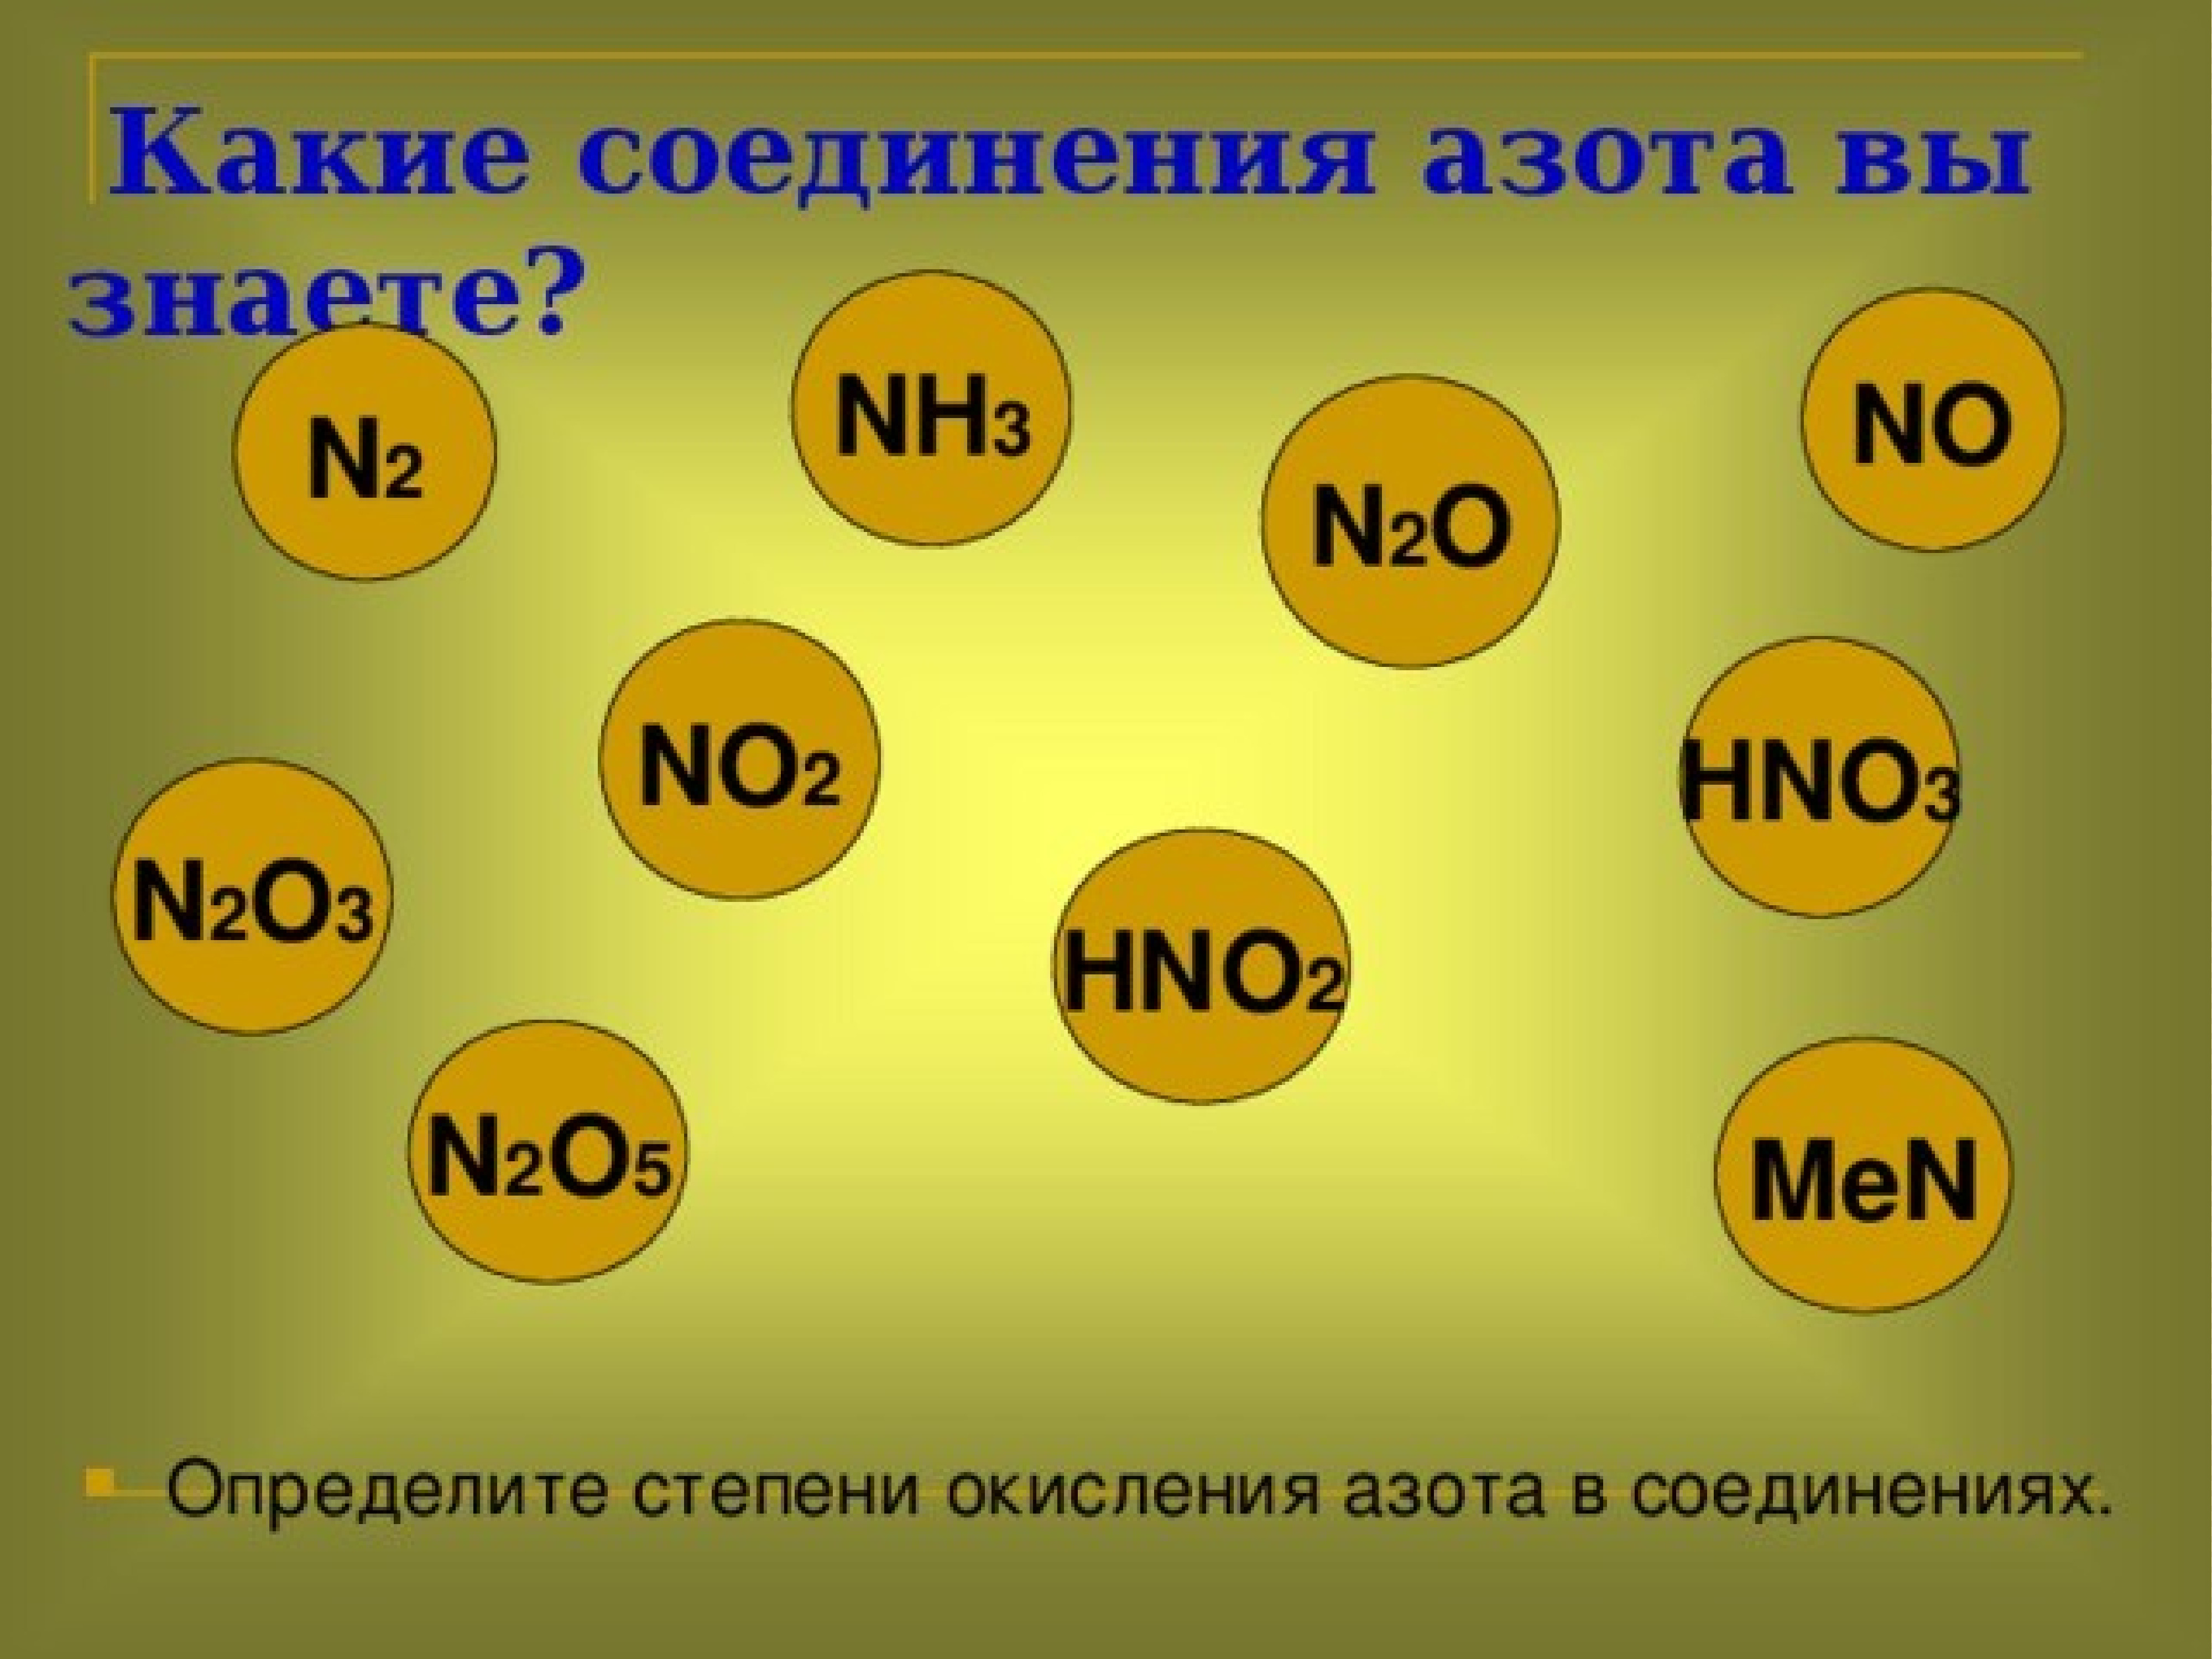 Установите соответствие hno2. N2o3 степень окисления азота. Hno3 степень окисления азота. Определите степени окисления азота в соединениях n2o. Степень окисления азота в соединениях n2o5.